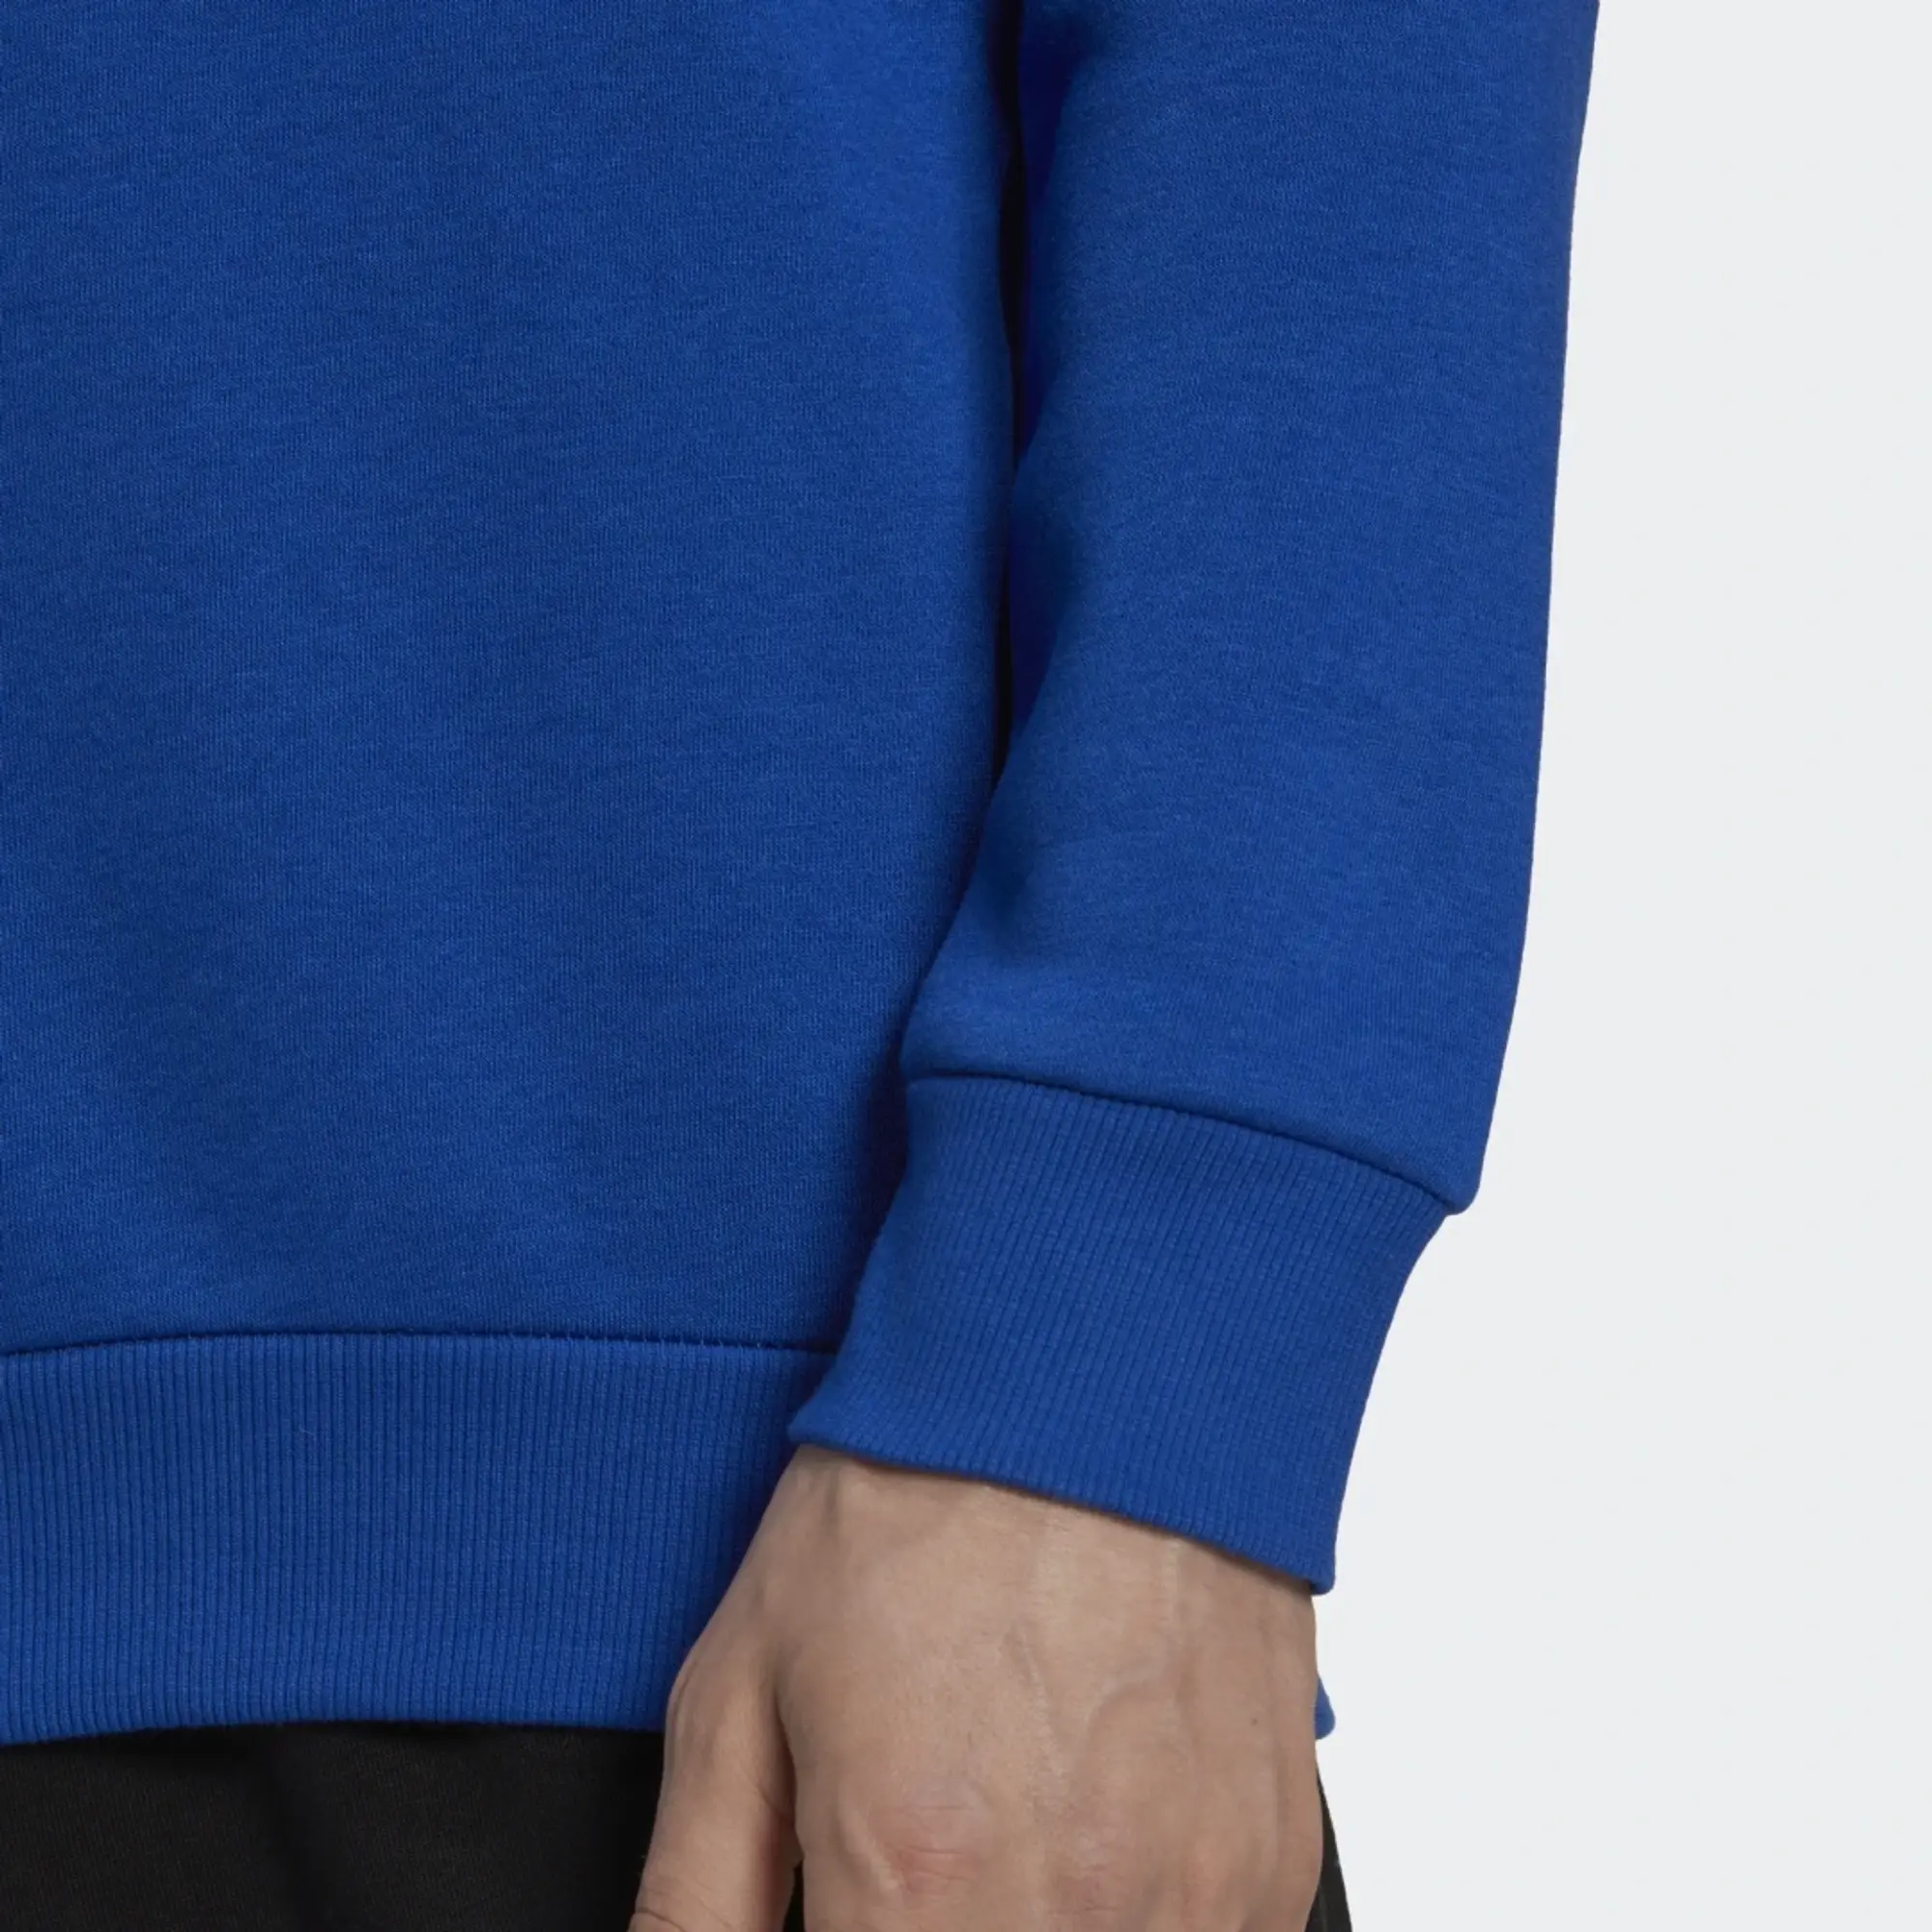 adidas Essentials Big Logo Sweatshirt - Royal Blue / White